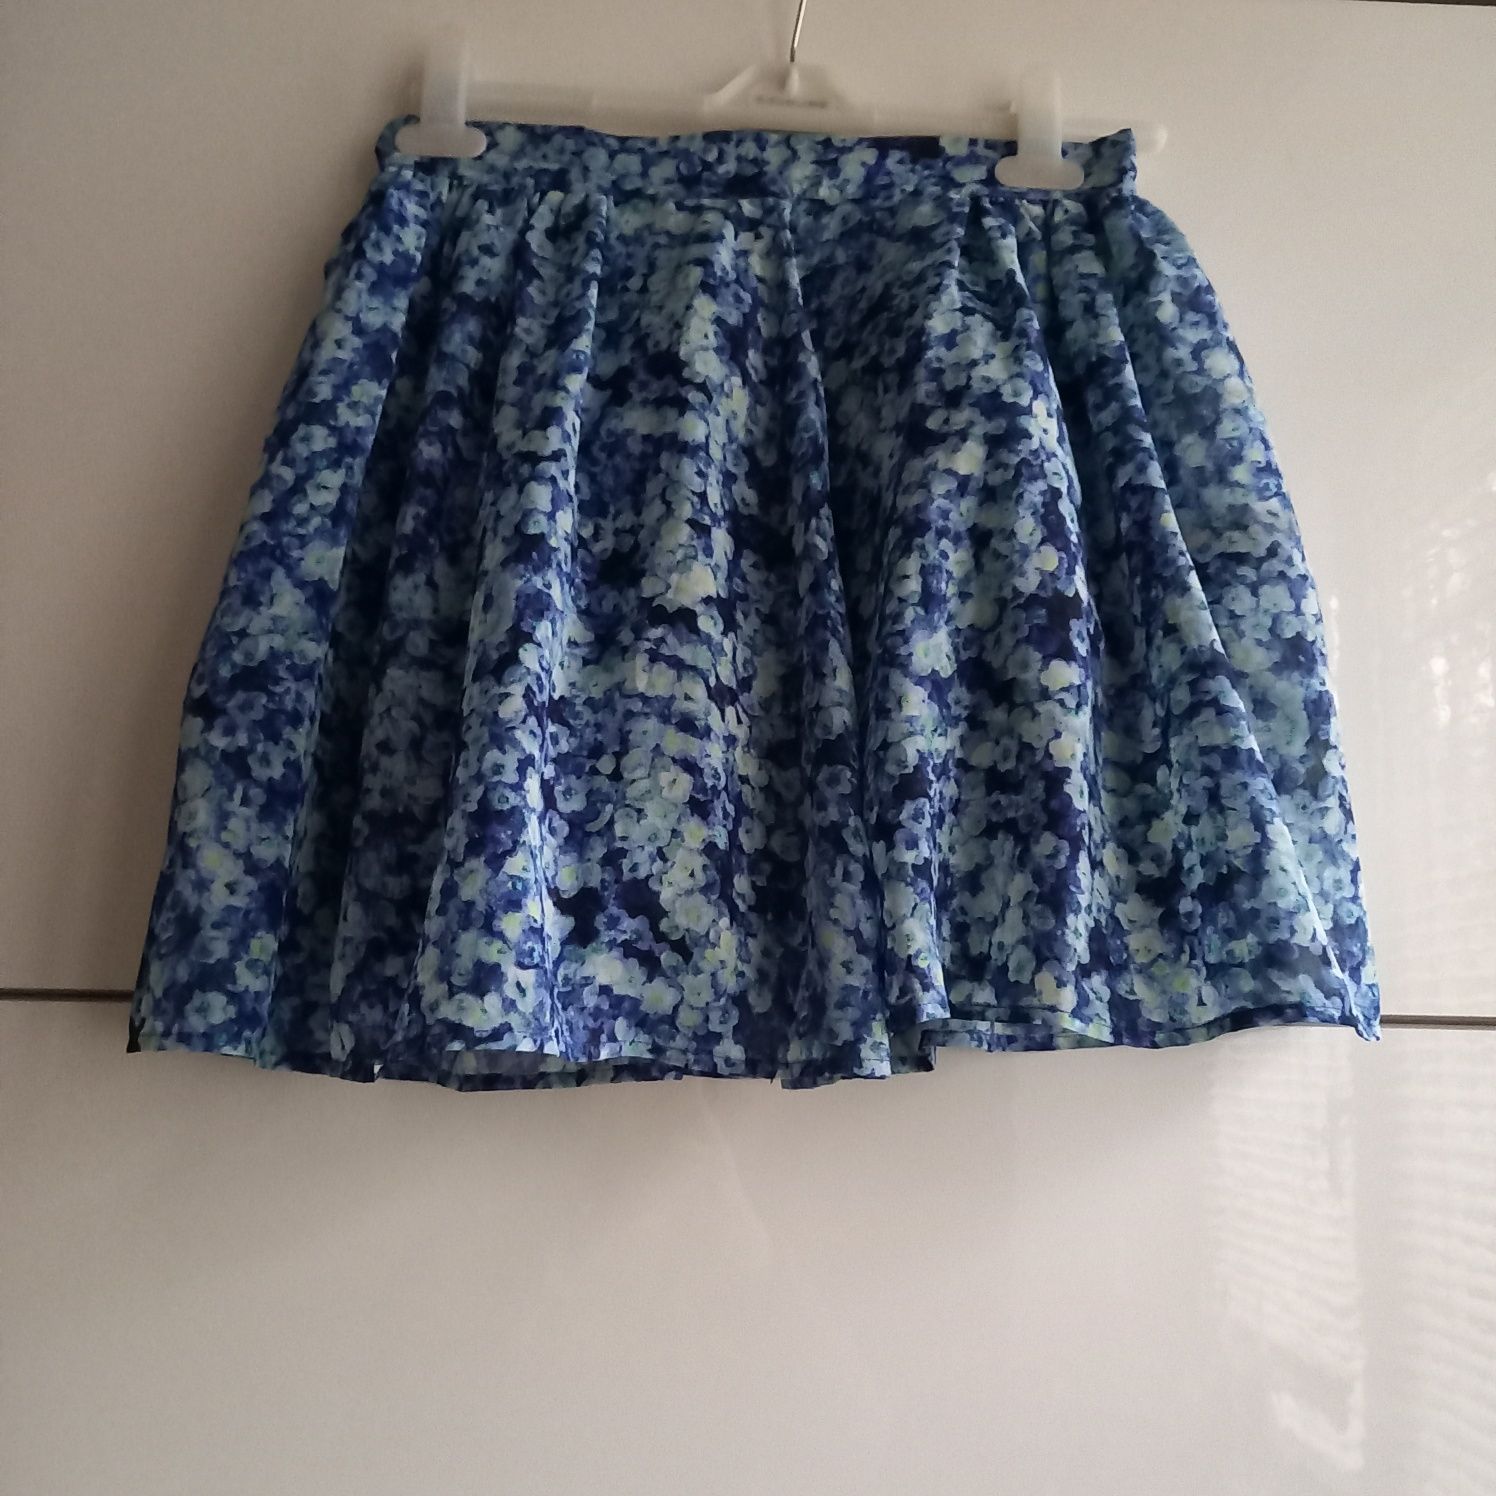 Śliczna spódnica tiulowa Bik Bok niebieska krótka w kwiaty jak Monet